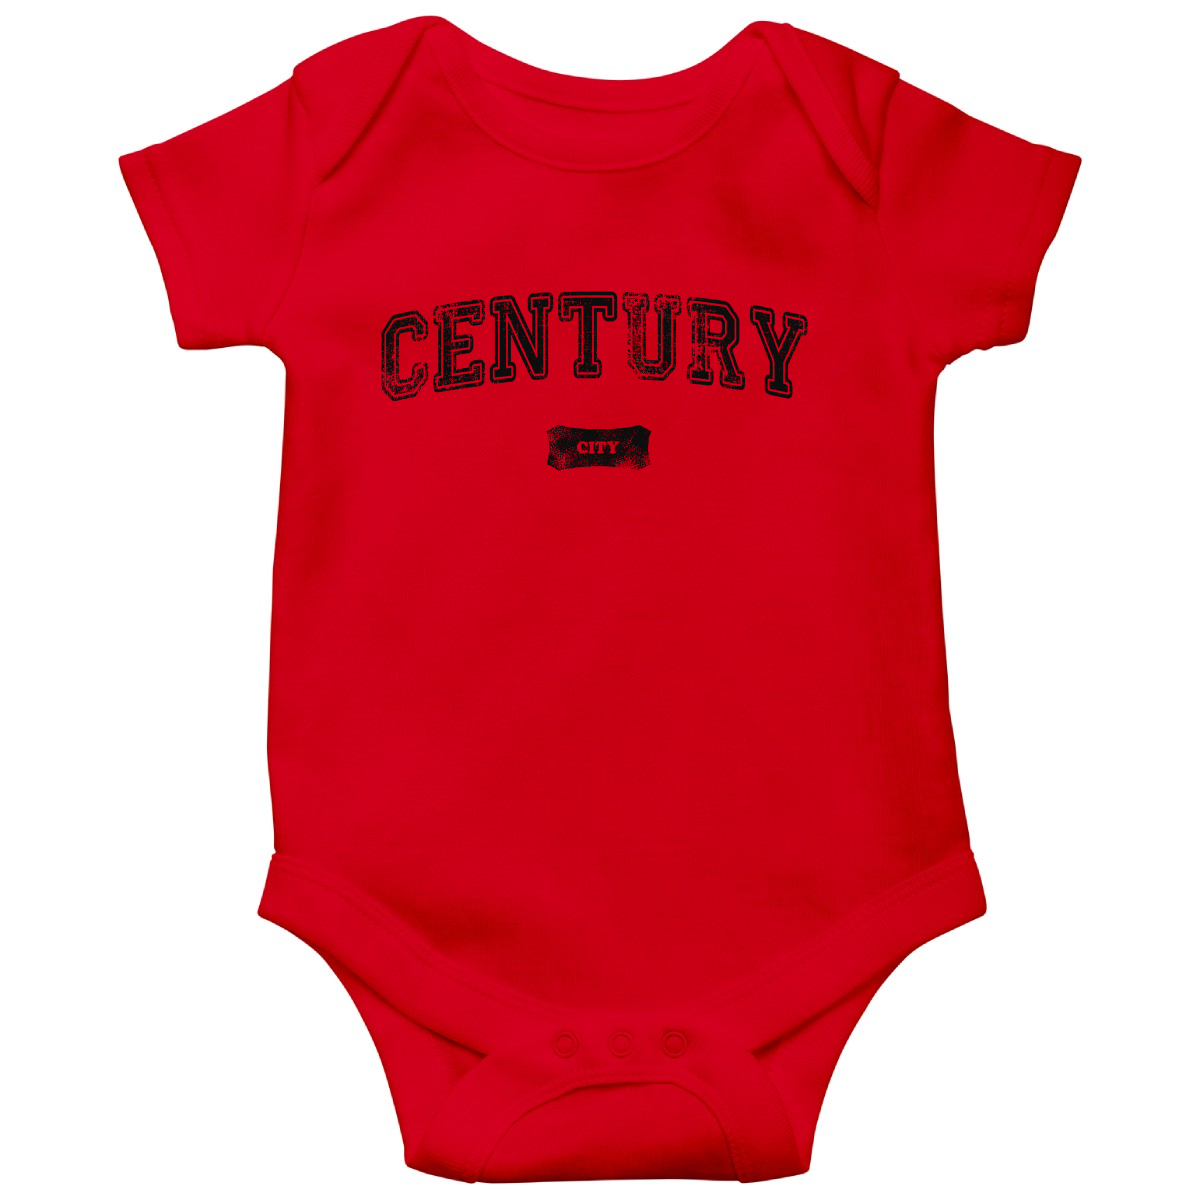 Century City Represent Baby Bodysuits